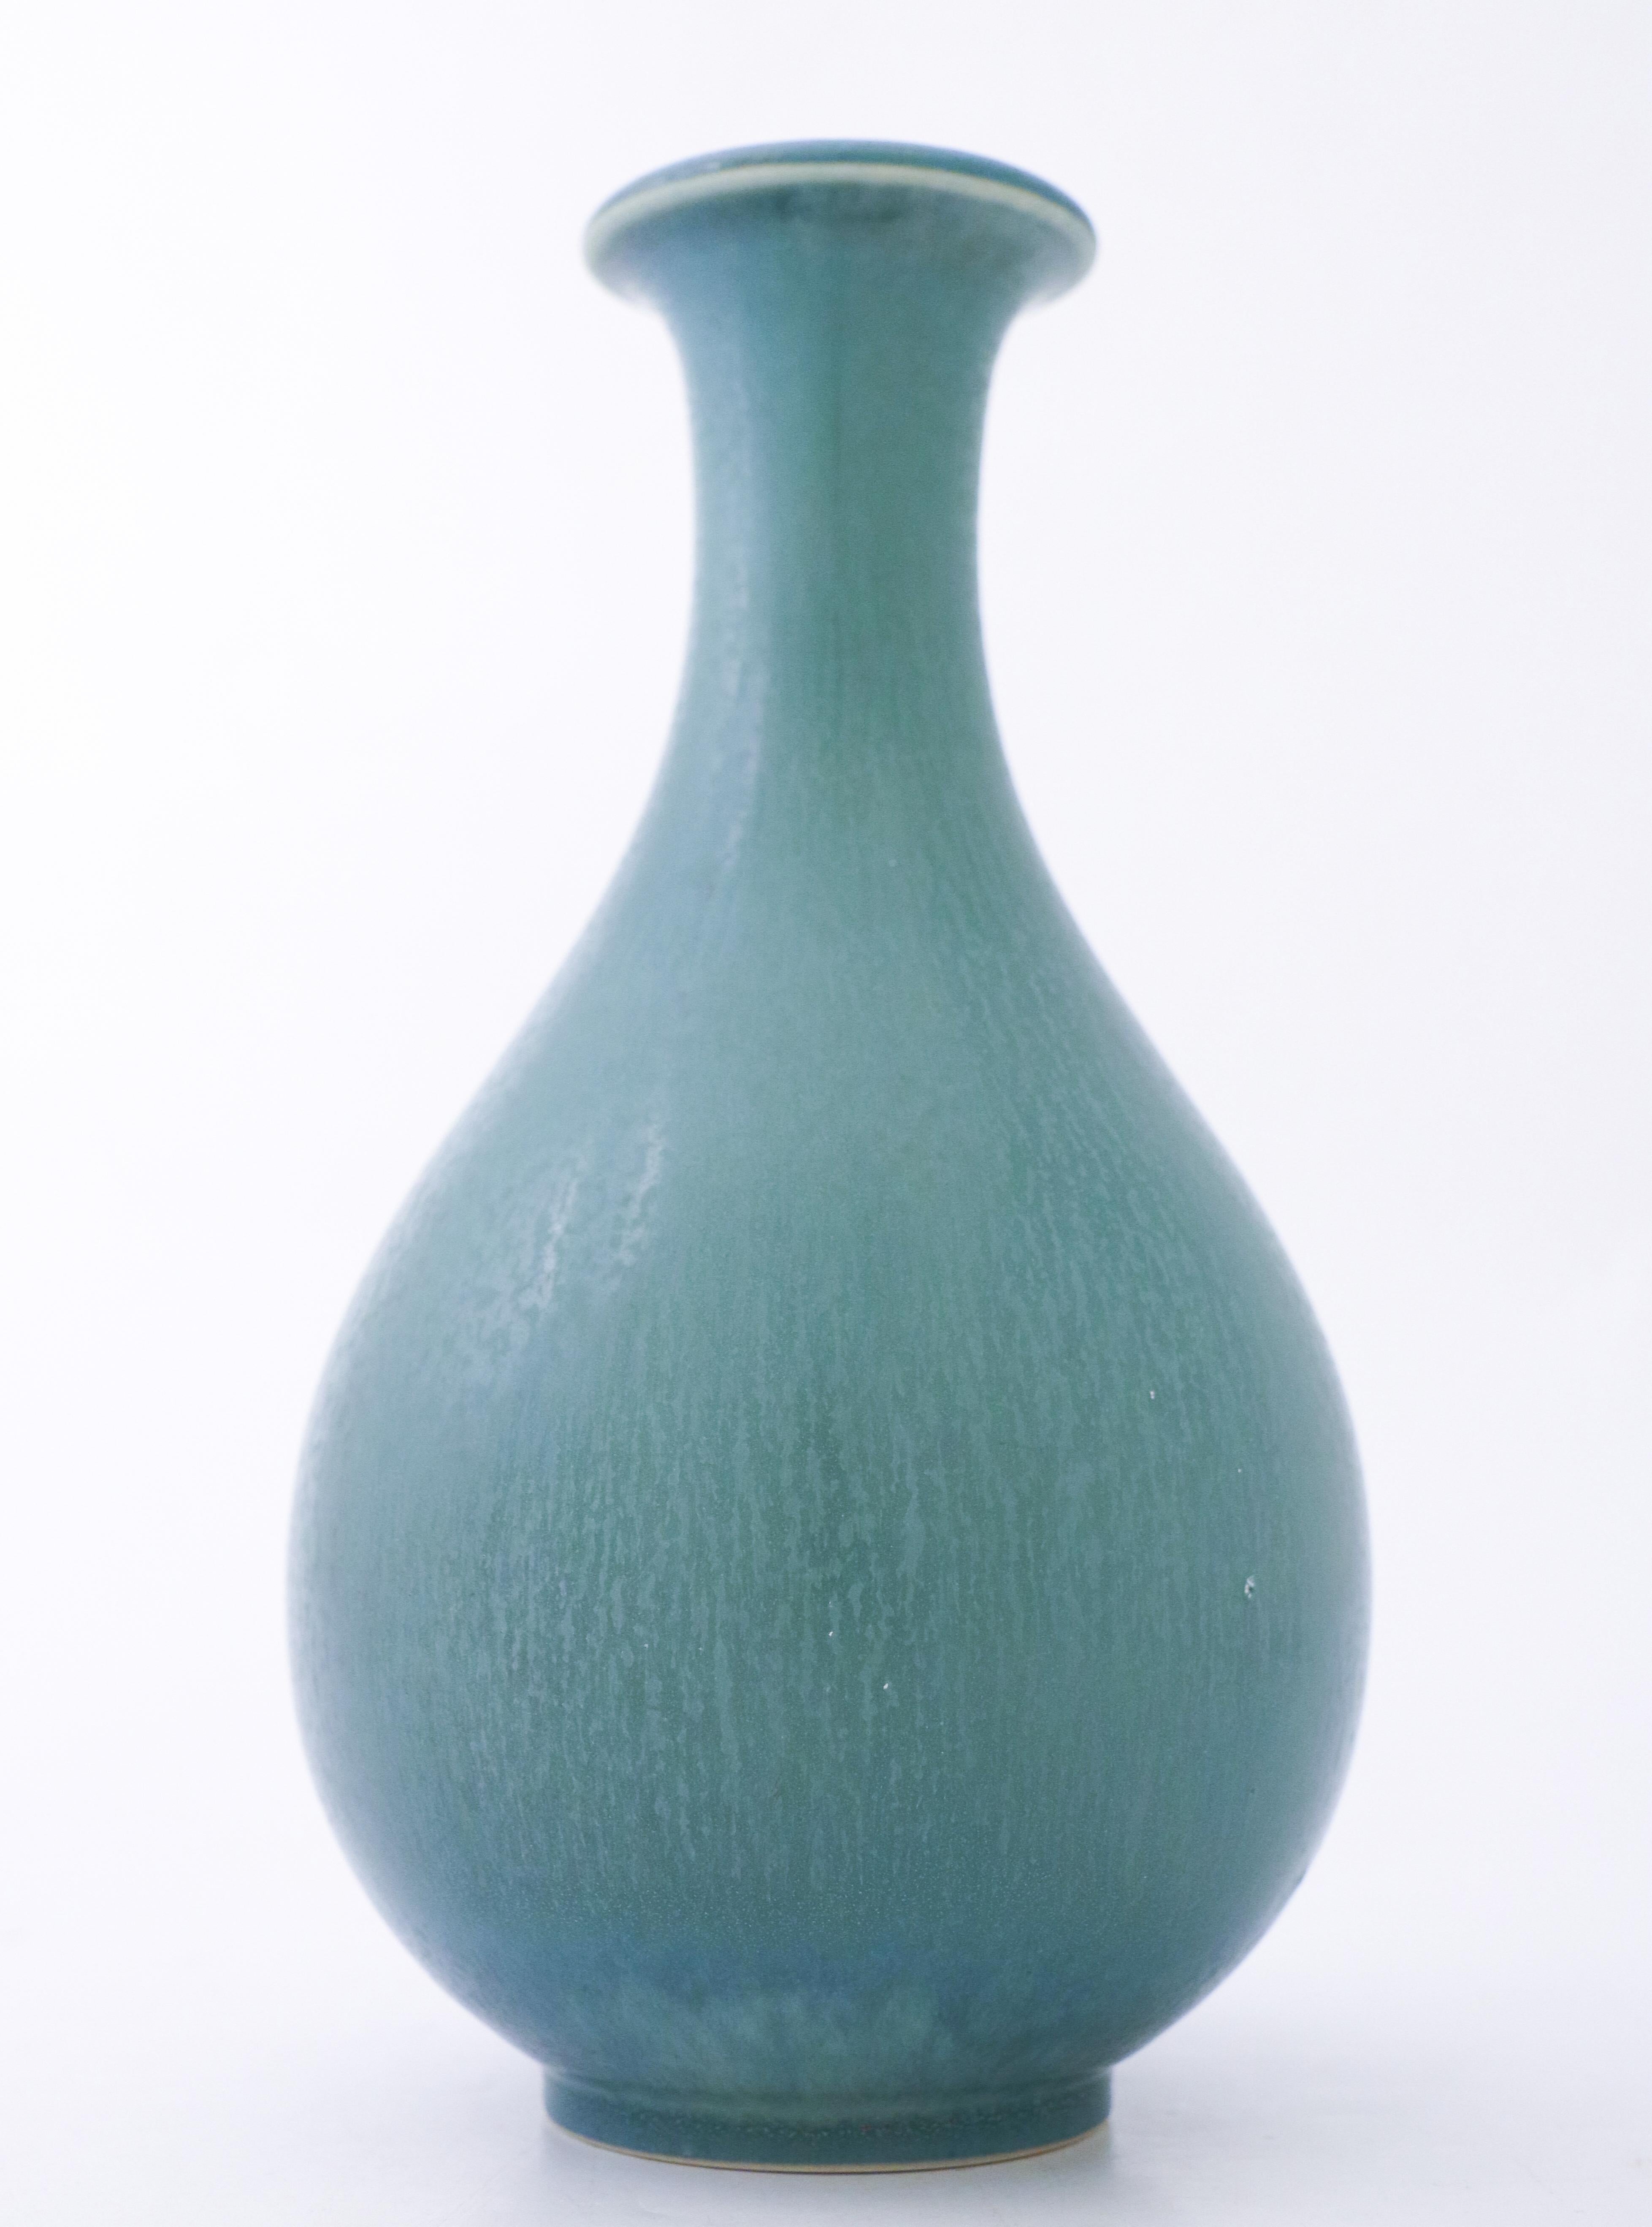 Un vase turquoise avec une belle glaçure en fourrure de har, conçu par Gunnar Nylund à Rörstrand, d'une hauteur de 24,5 cm (9,8). Il est en excellent état, à l'exception de quelques marques mineures dans la glaçure, et est marqué comme étant de